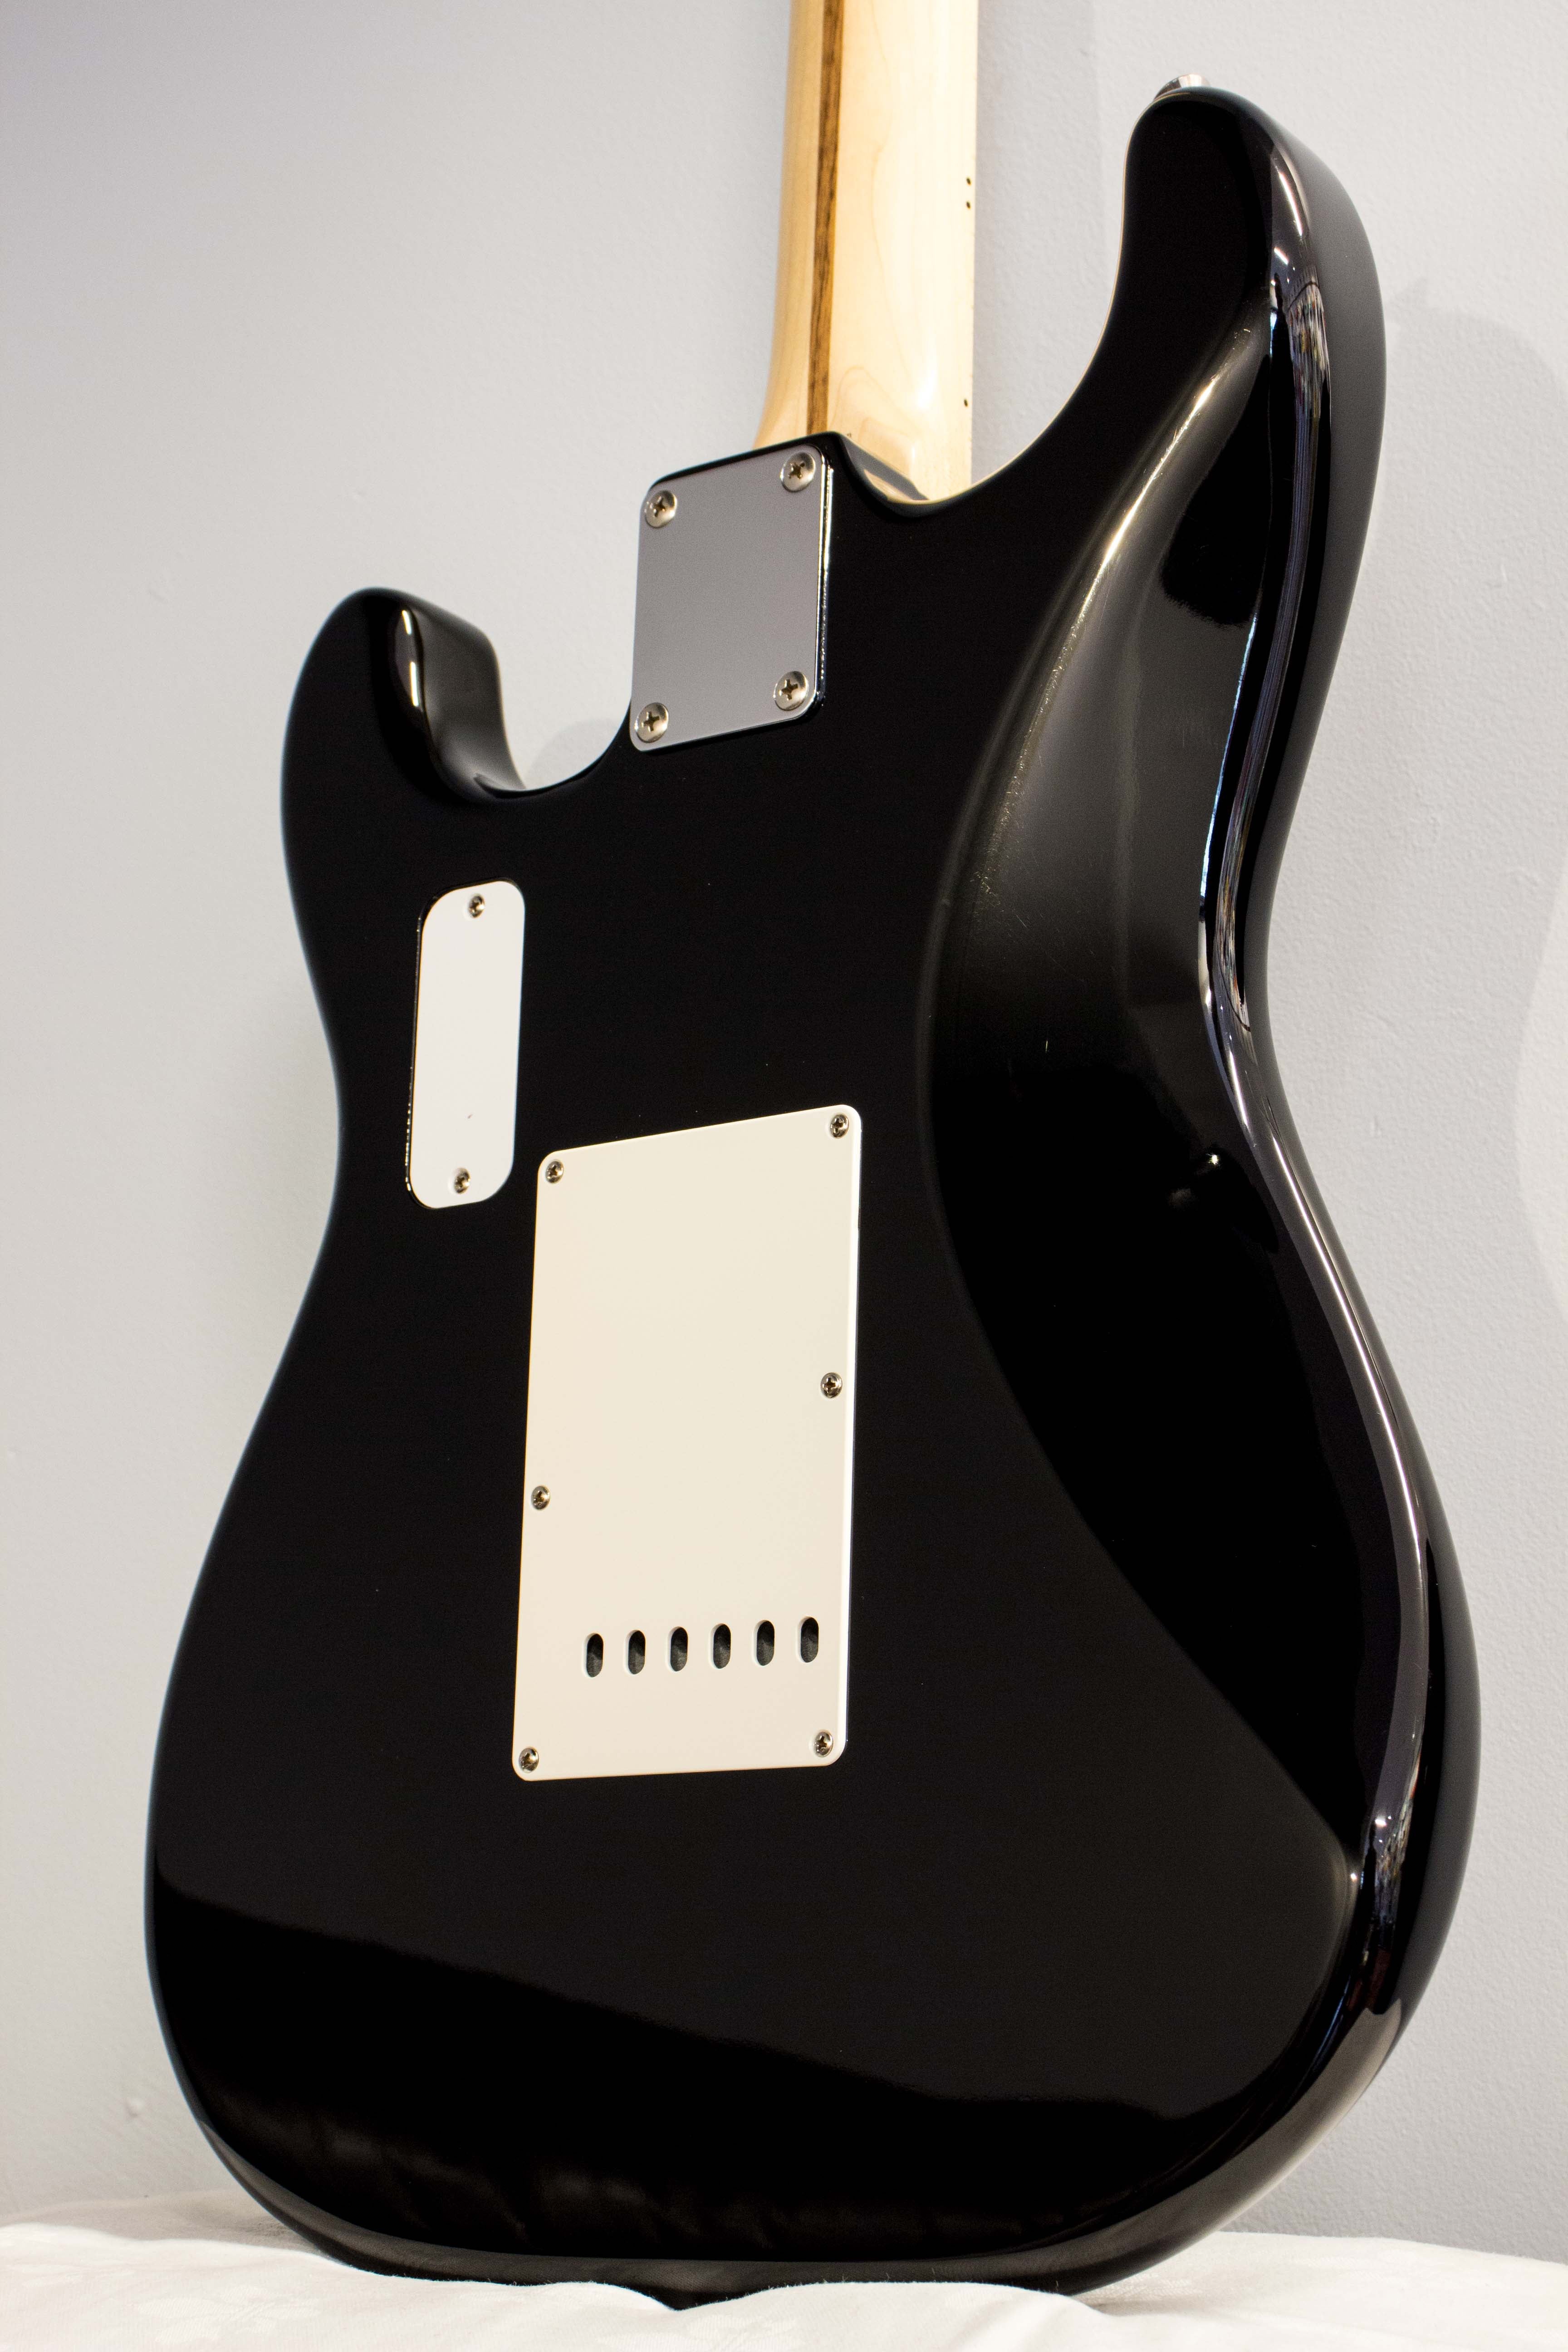 Fender Japan '54 Stratocaster ST54-95LS Black 2007 – Topshelf